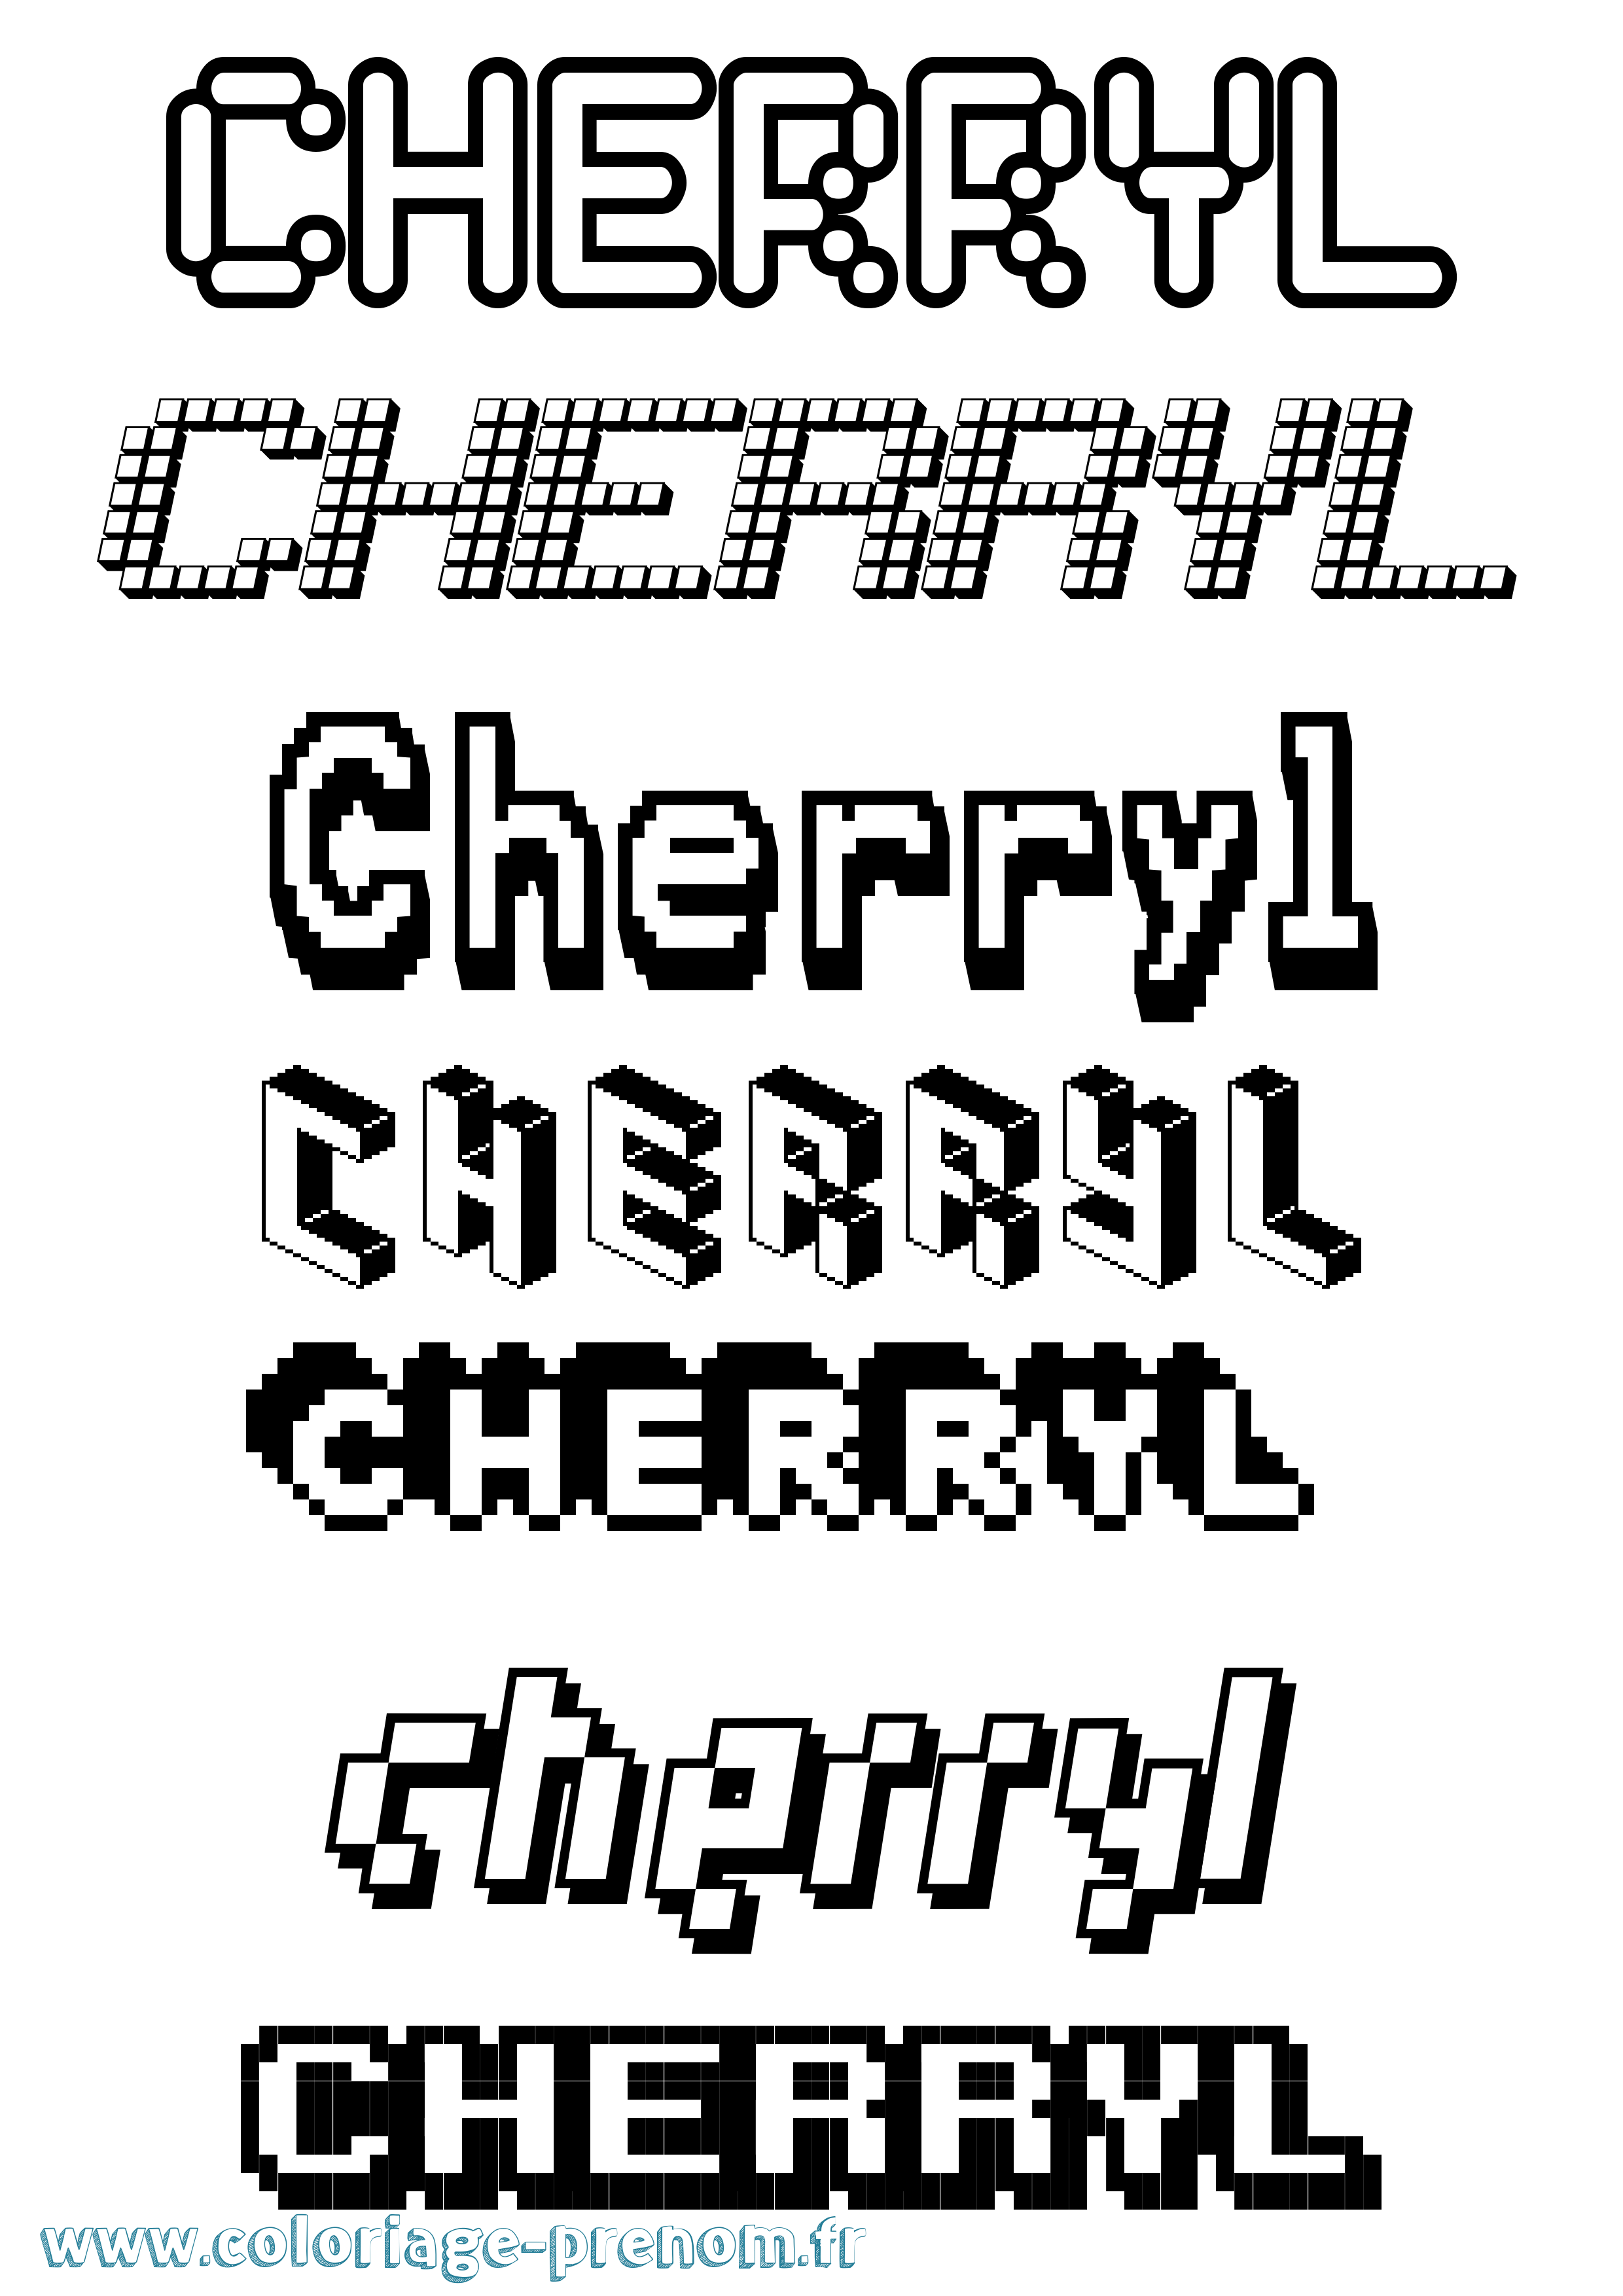 Coloriage prénom Cherryl Pixel